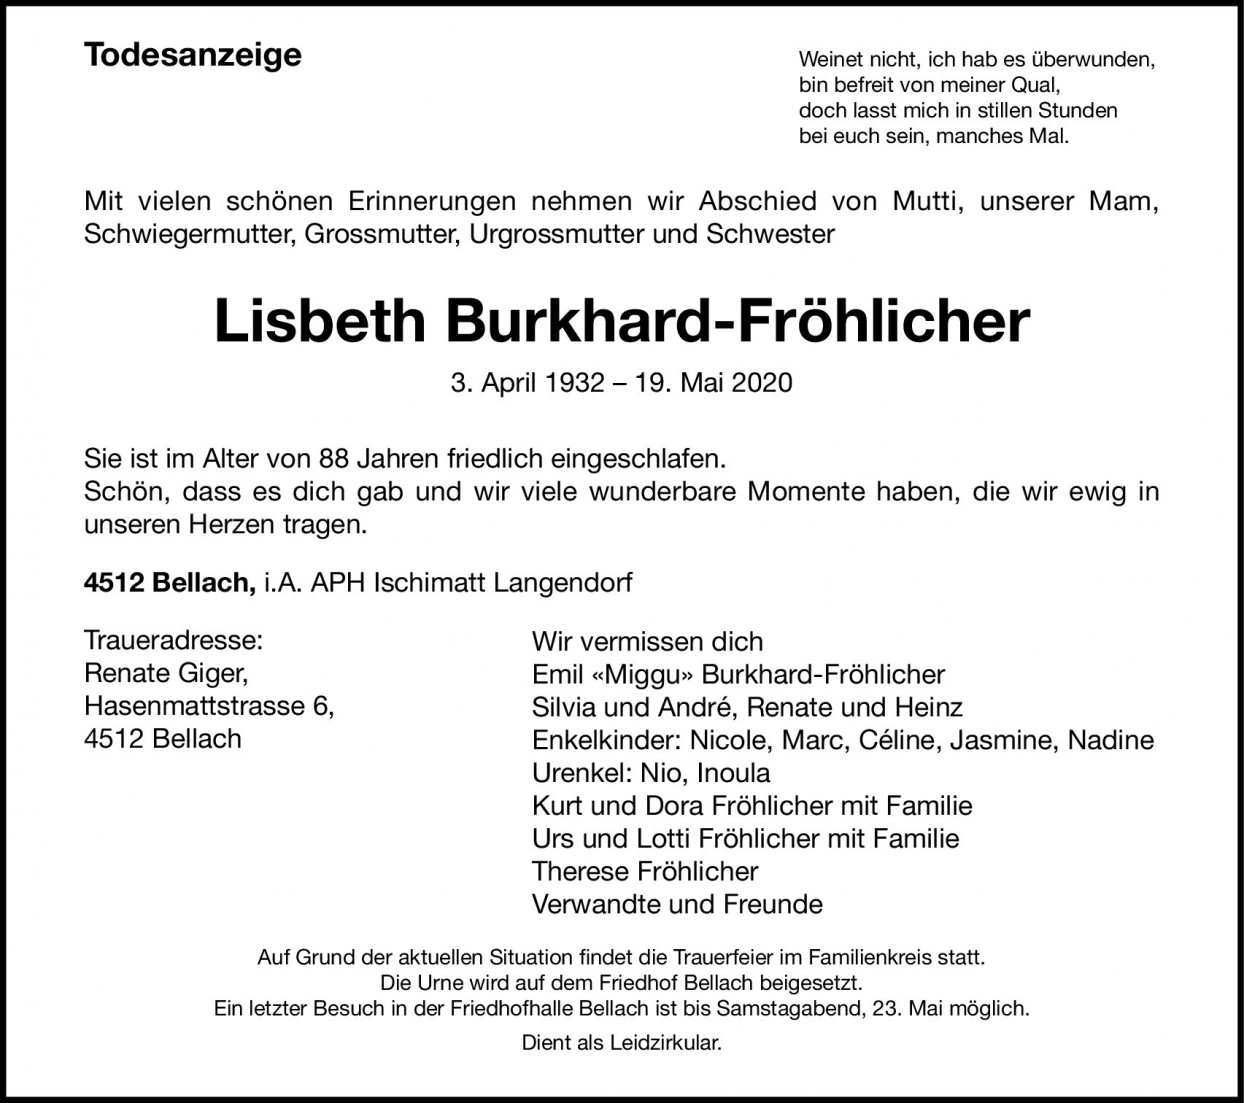 Lisbeth Burkhard-Fröhlicher